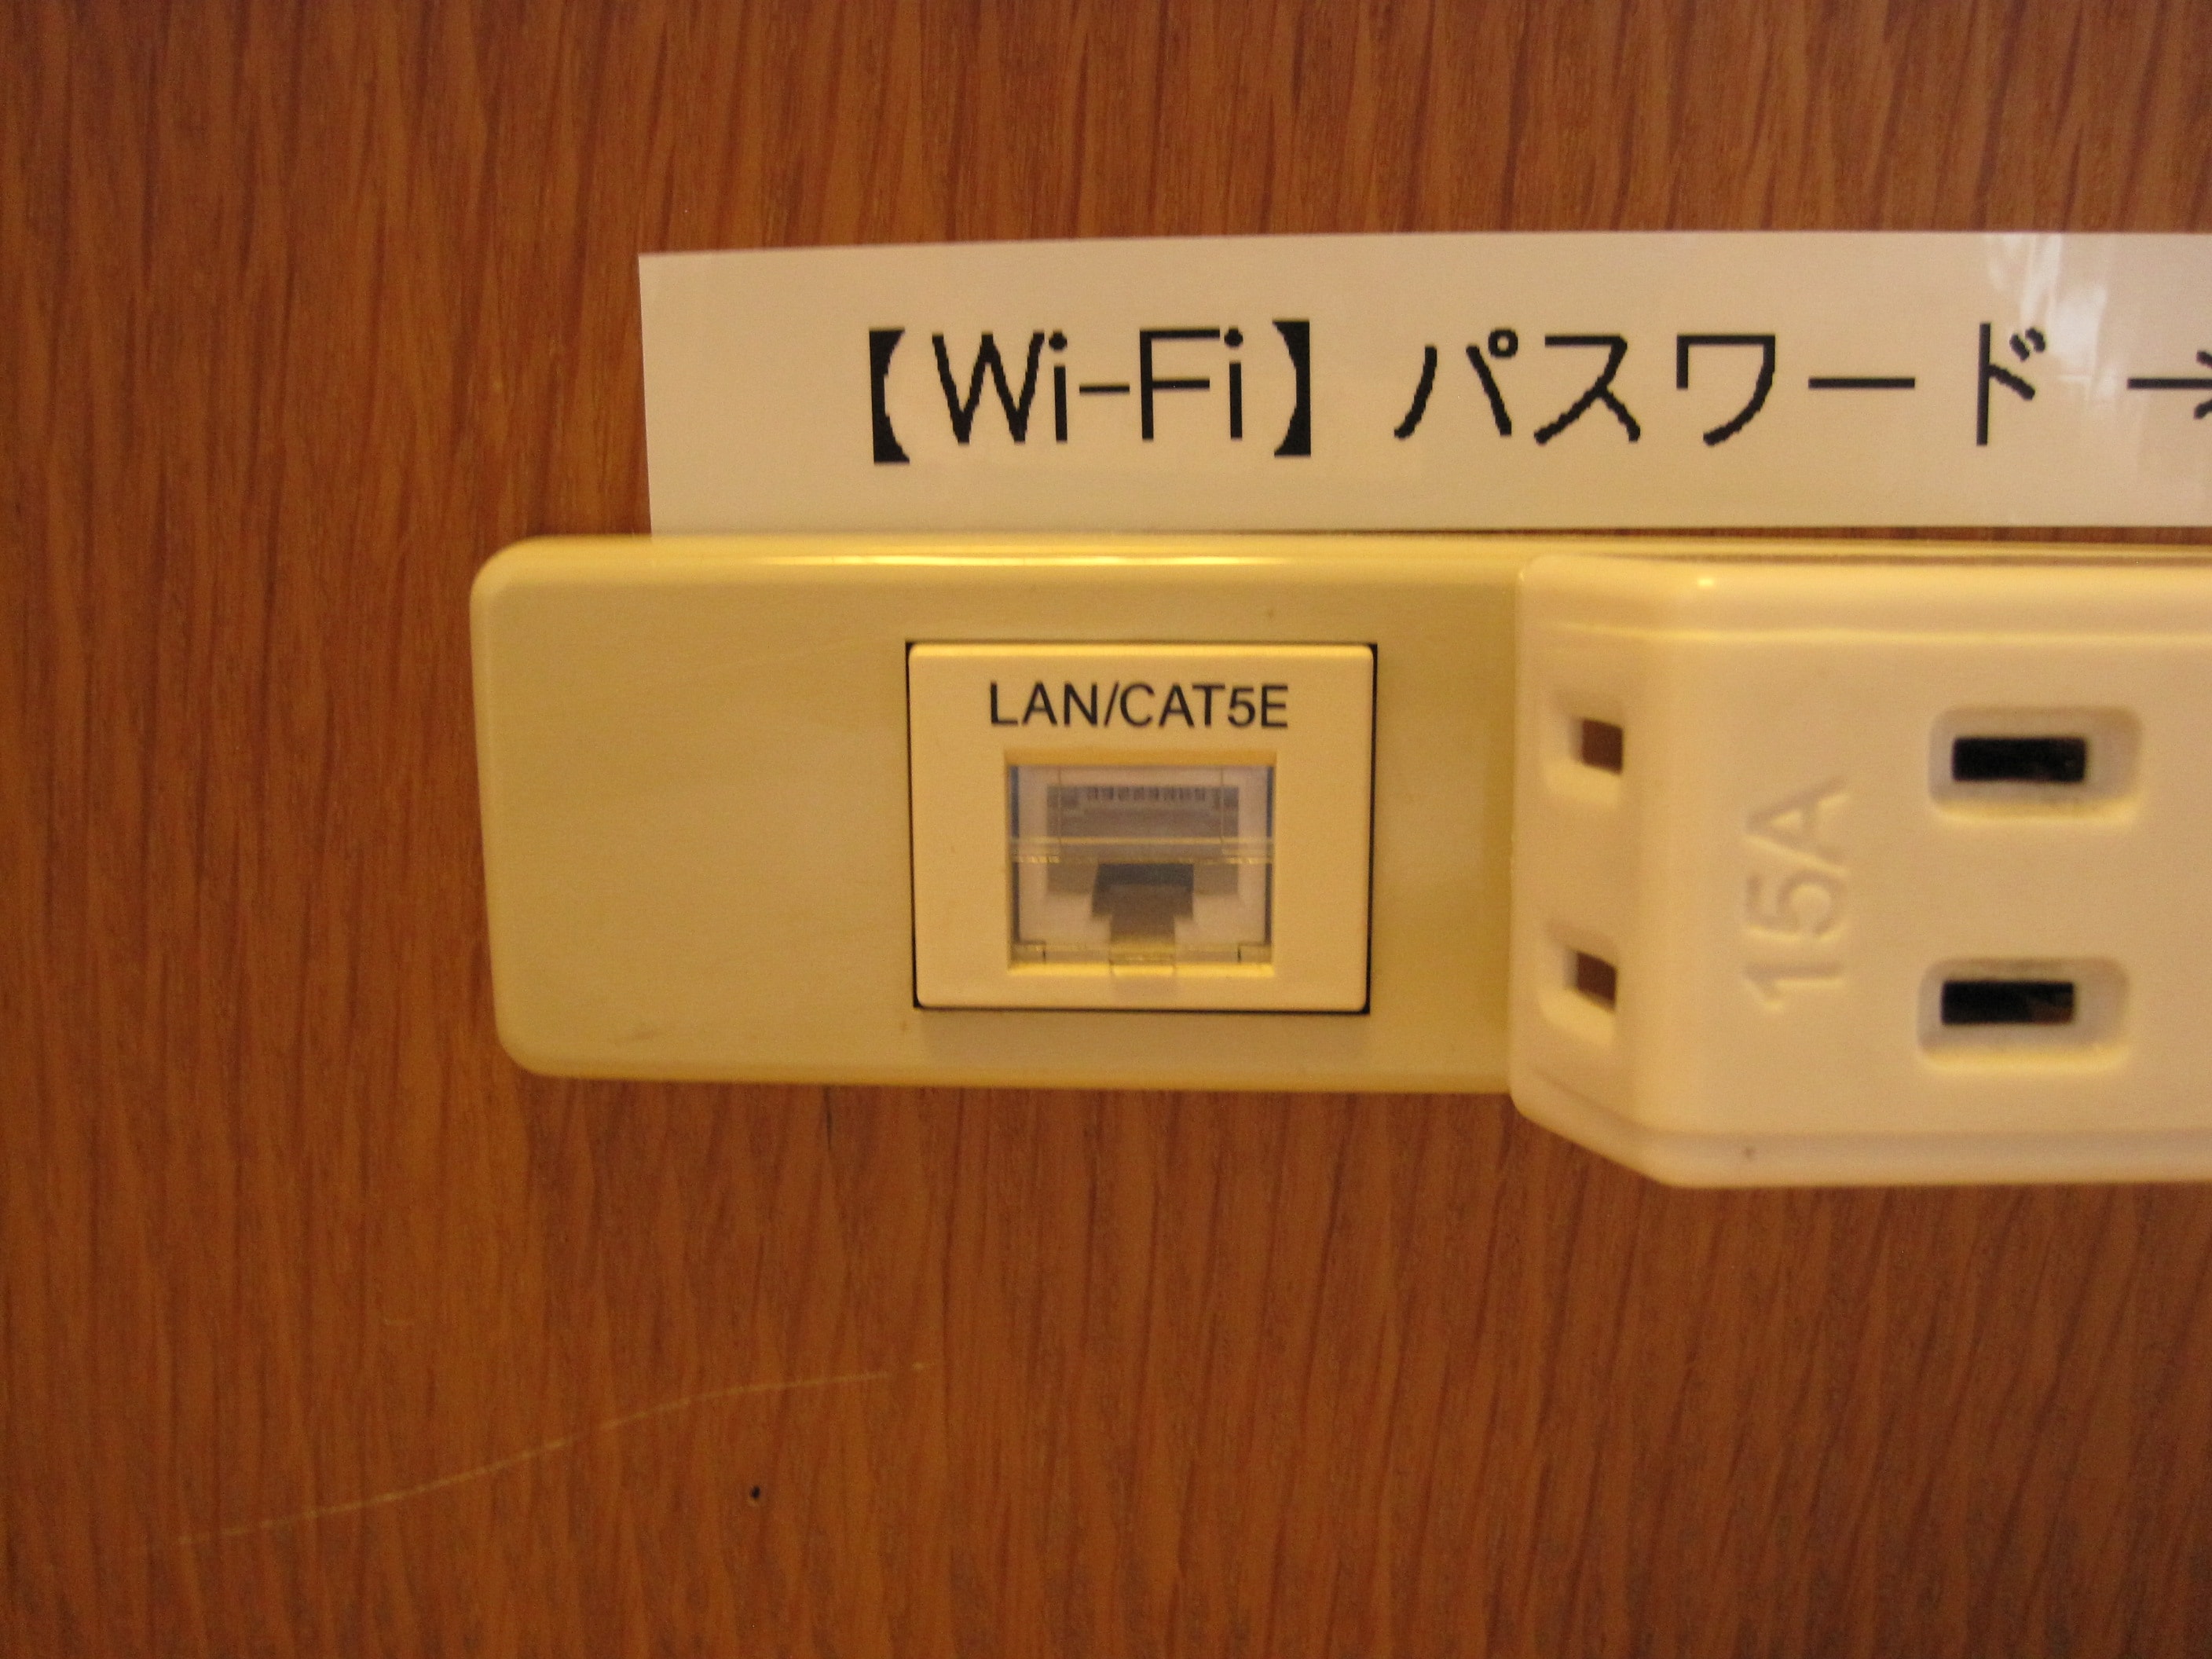 อินเทอร์เน็ต Wi-Fi / LAN แบบมีสาย